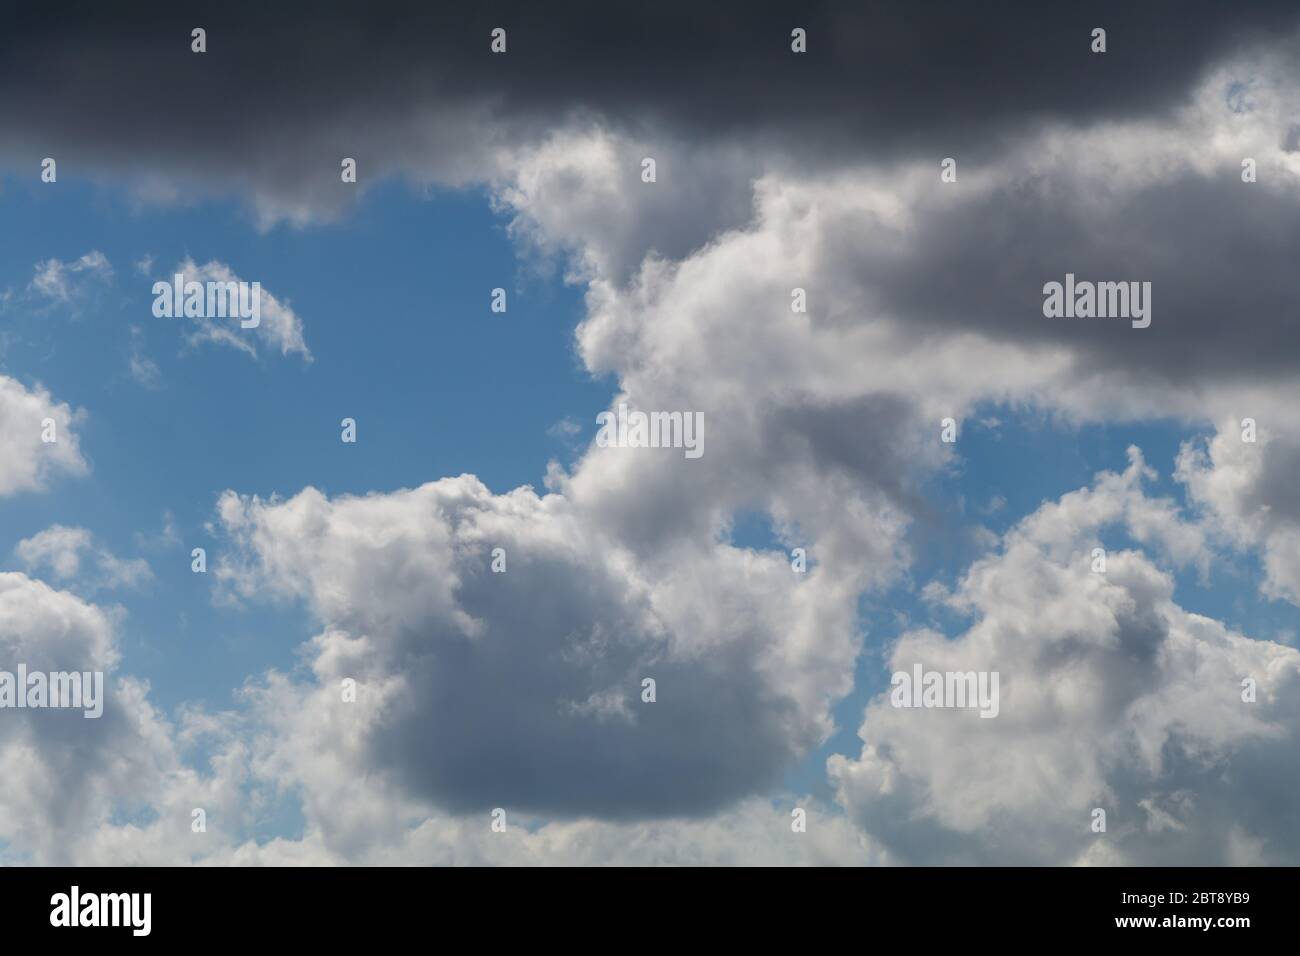 La formation de nuages against a blue sky Banque D'Images